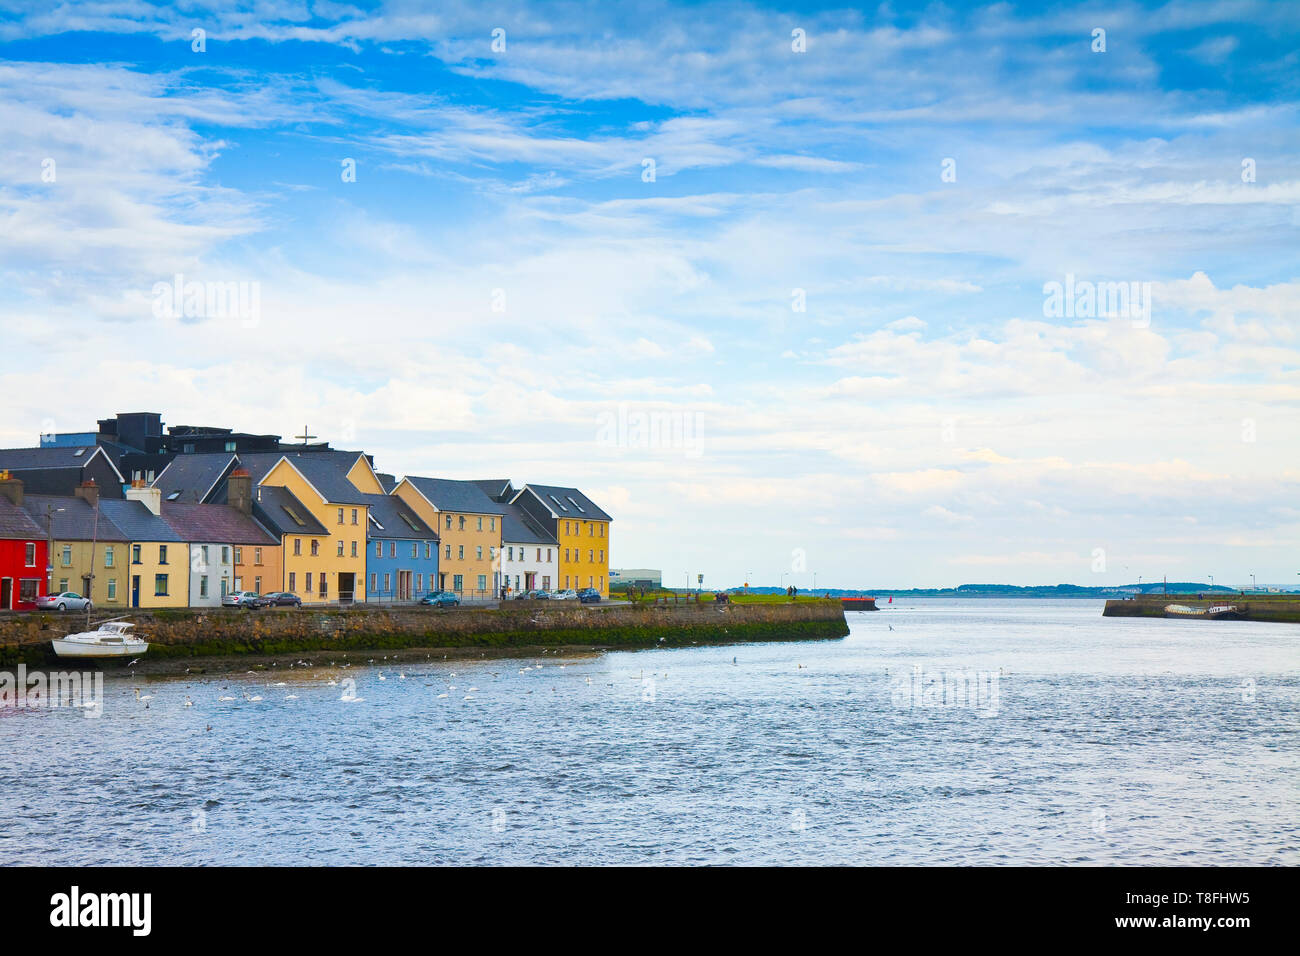 Paysage côtier irlandais avec les couleurs typiques maisons de pêcheurs avec des toits en pente (Galway - Irlande) Banque D'Images